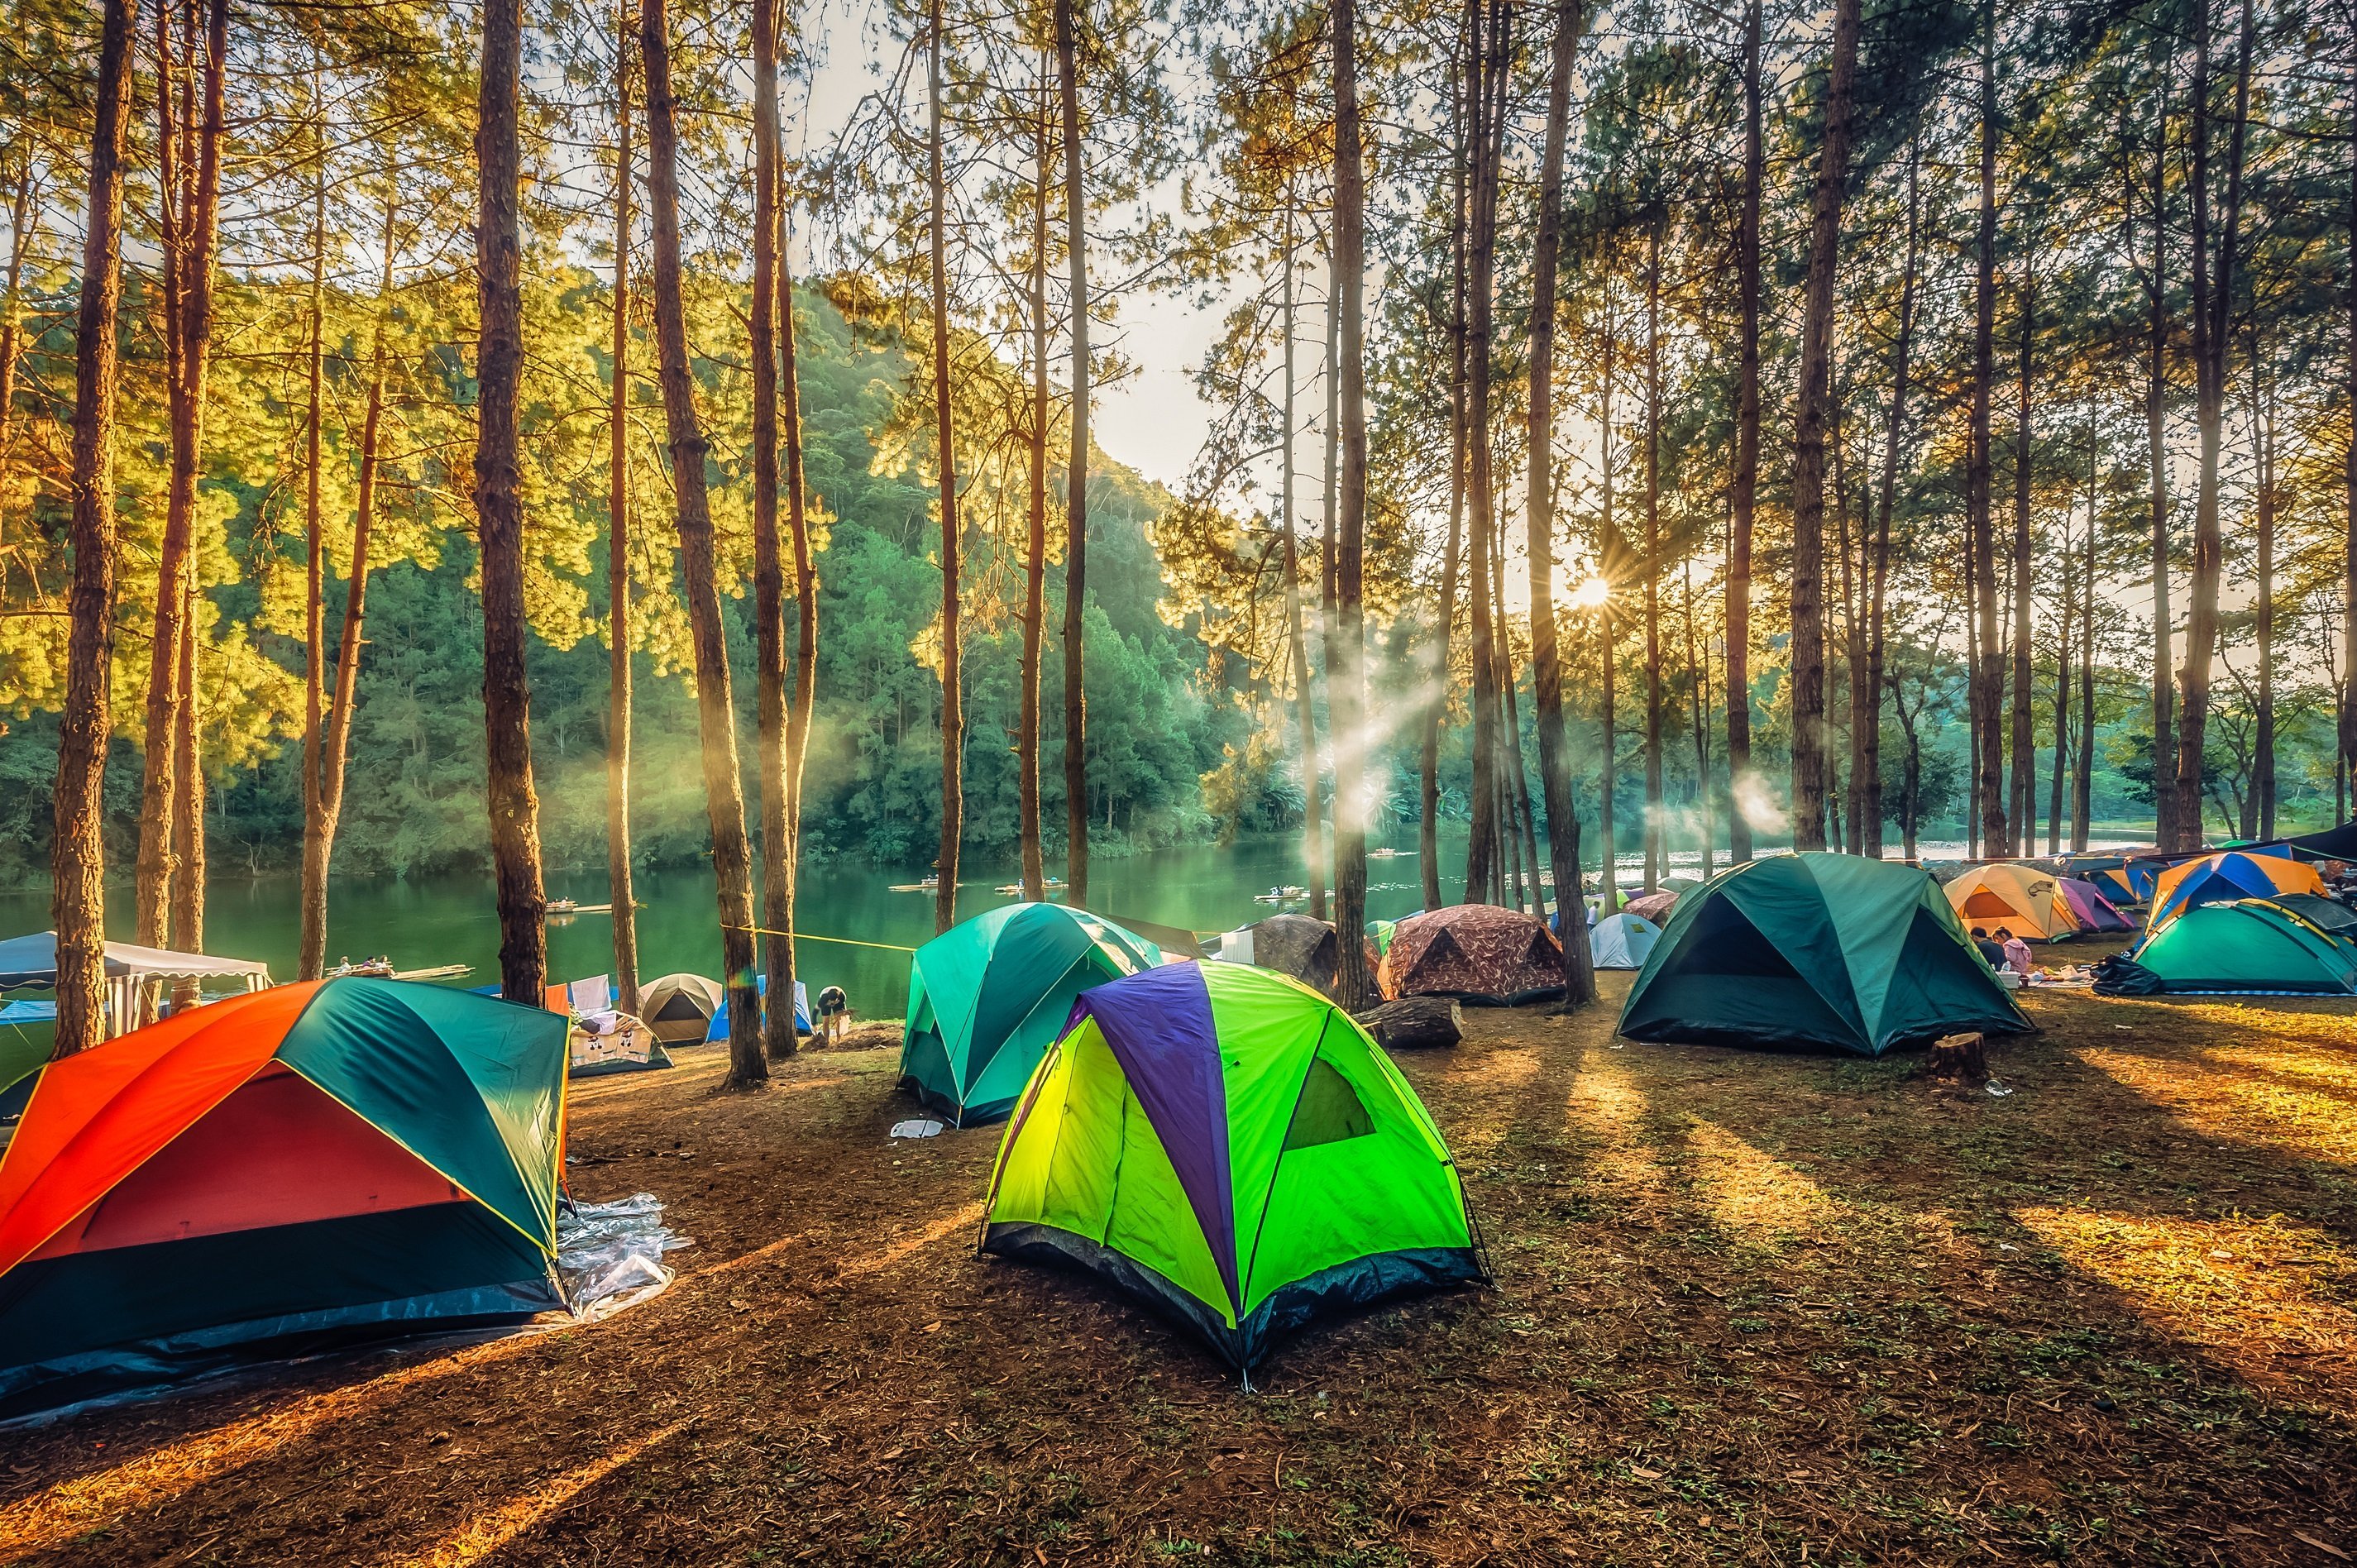 Camp фото. Поляна Увильды кемпинг. Палатка на природе. Палаточный лагерь. Туристическая палатка на природе.